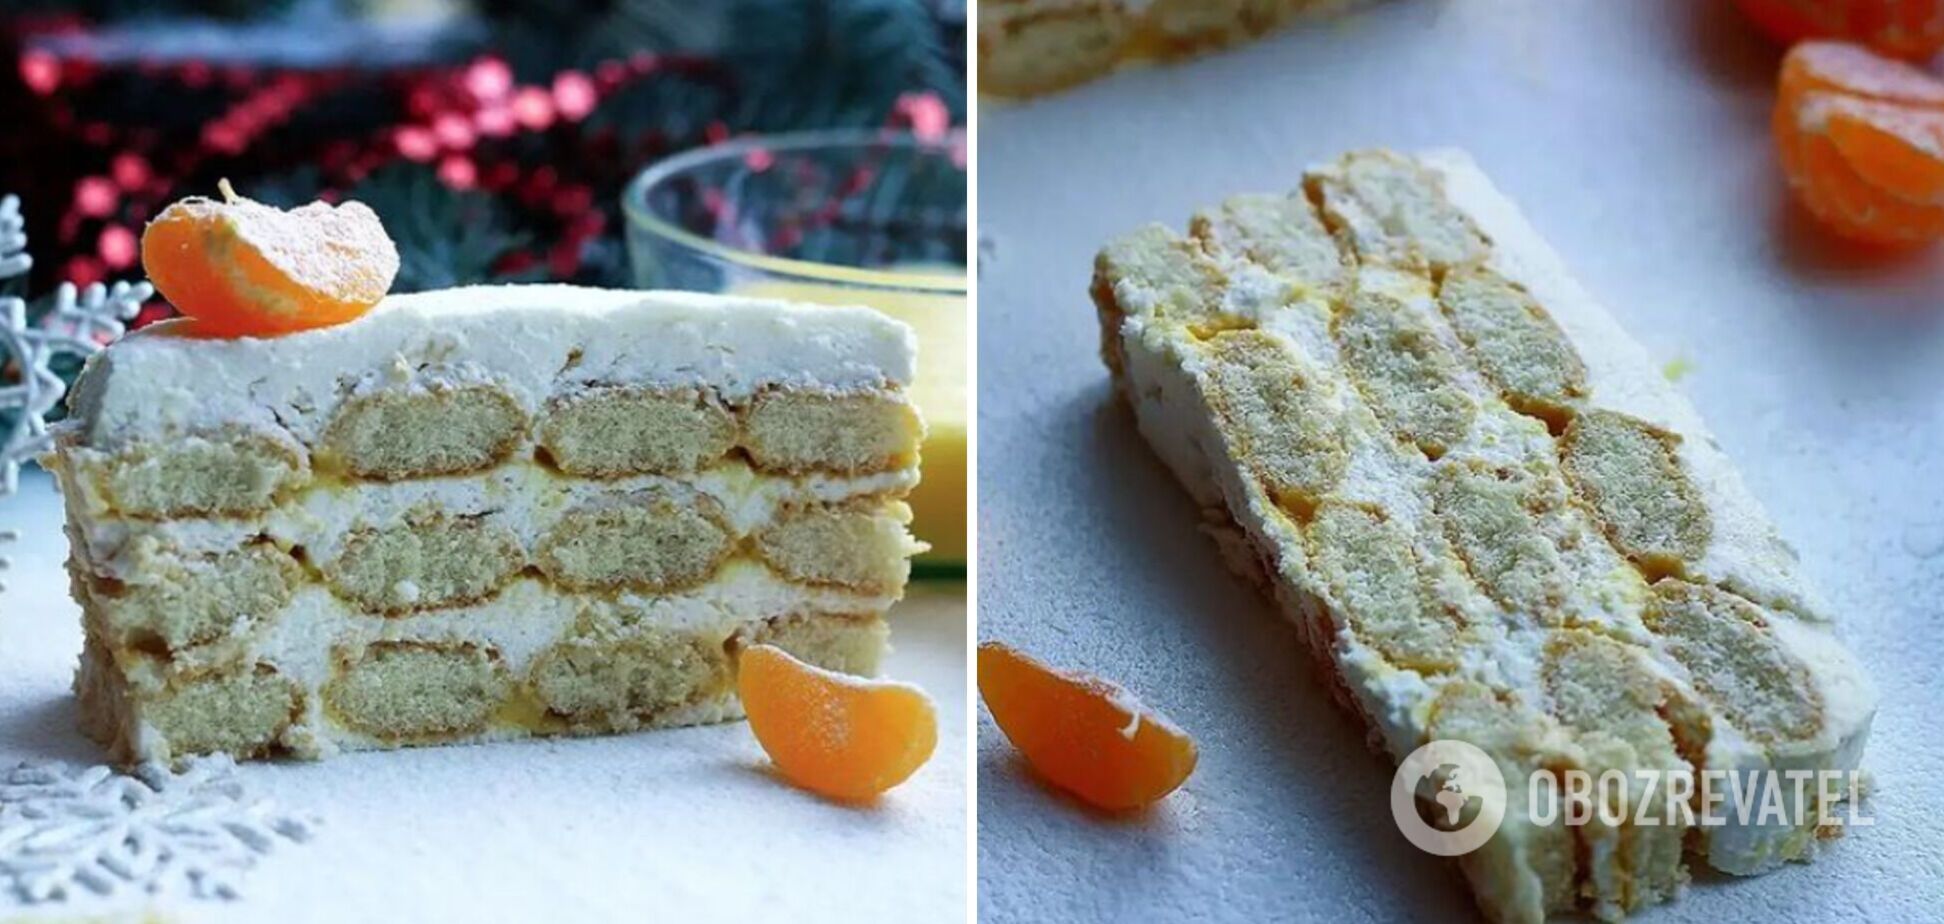 Новогодний десерт в стиле тирамису без выпечки: с мандариновым кремом